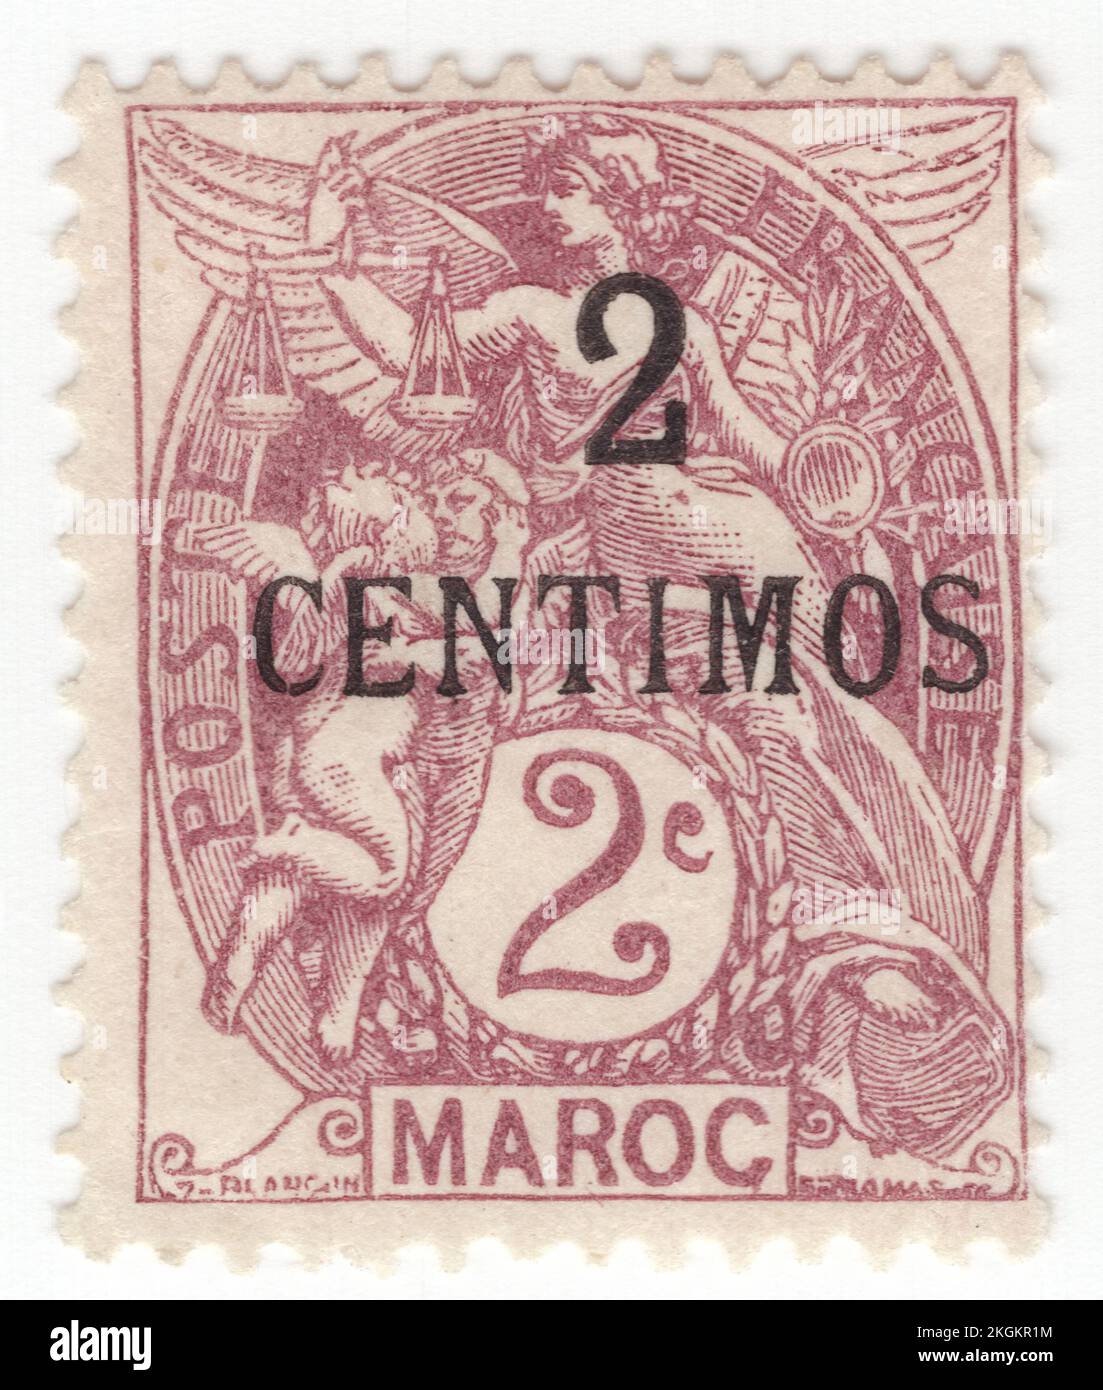 FRANZÖSISCH-MAROKKO - 1908: Eine violett-braune Briefmarke von 2 Centimus auf 2 Centimes, die die alte Göttin als Allegorie "Freiheit, Gleichheit, Brüderlichkeit" darstellt. Französische Standardausgabe "Blanc", entworfen von Paul-Joseph Blanc. Capital — Rabat. Das französische Marokko war von 1912 bis 1956 ein französisches Protektorat, als es zusammen mit den spanischen und tangischen Zonen Marokkos das unabhängige Land Marokko wurde. In der internationalen Zone Tanger im Norden Marokkos wurden Briefmarken mit der Aufschrift „Tanger“ verwendet Stockfoto